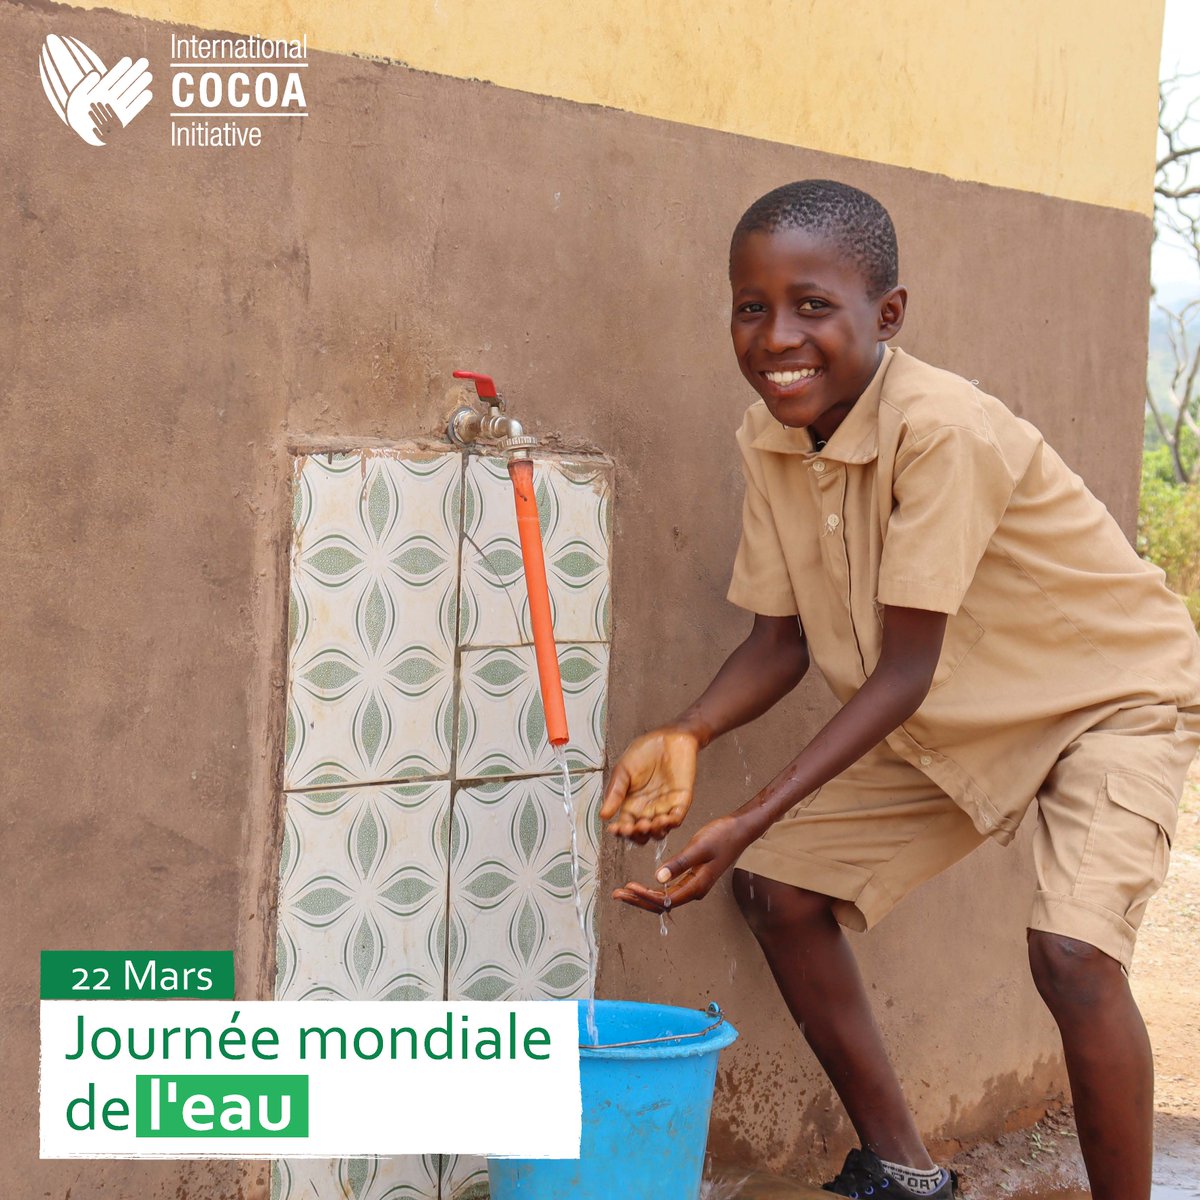 L'eau est une ressource précieuse, un droit de l'homme. A ICI, on sait qu'en aidant les communautés cacaoyères en CIV et au GHA à accéder à une eau saine et propre, on peut contribuer à lutter contre le #TravailDesEnfants et à créer à un avenir meilleur #JournéeMondialeDelEau